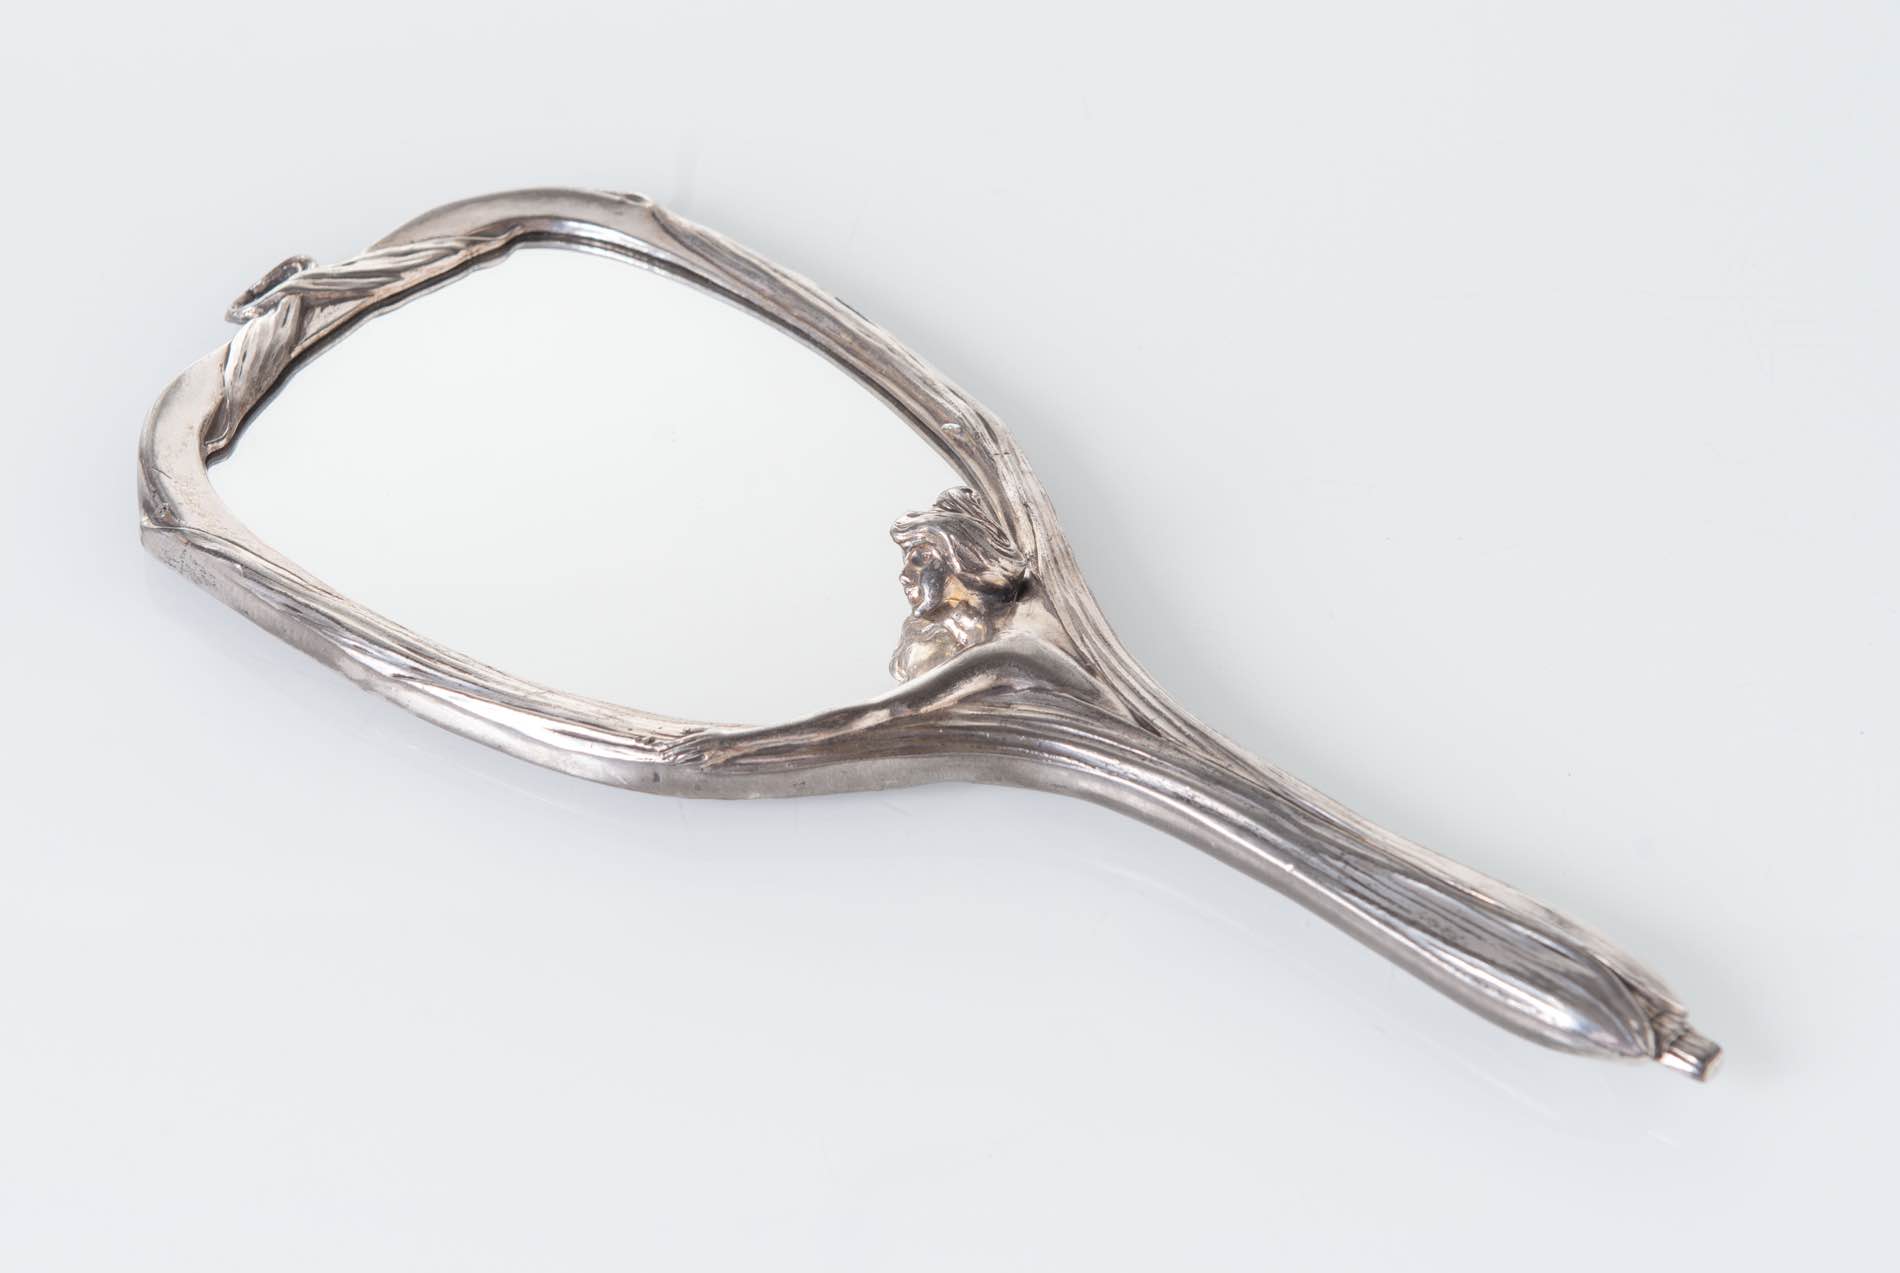 Manifattura Tedesca - Inizio del XX secolo, Specchio da toilette in metallo argentato.